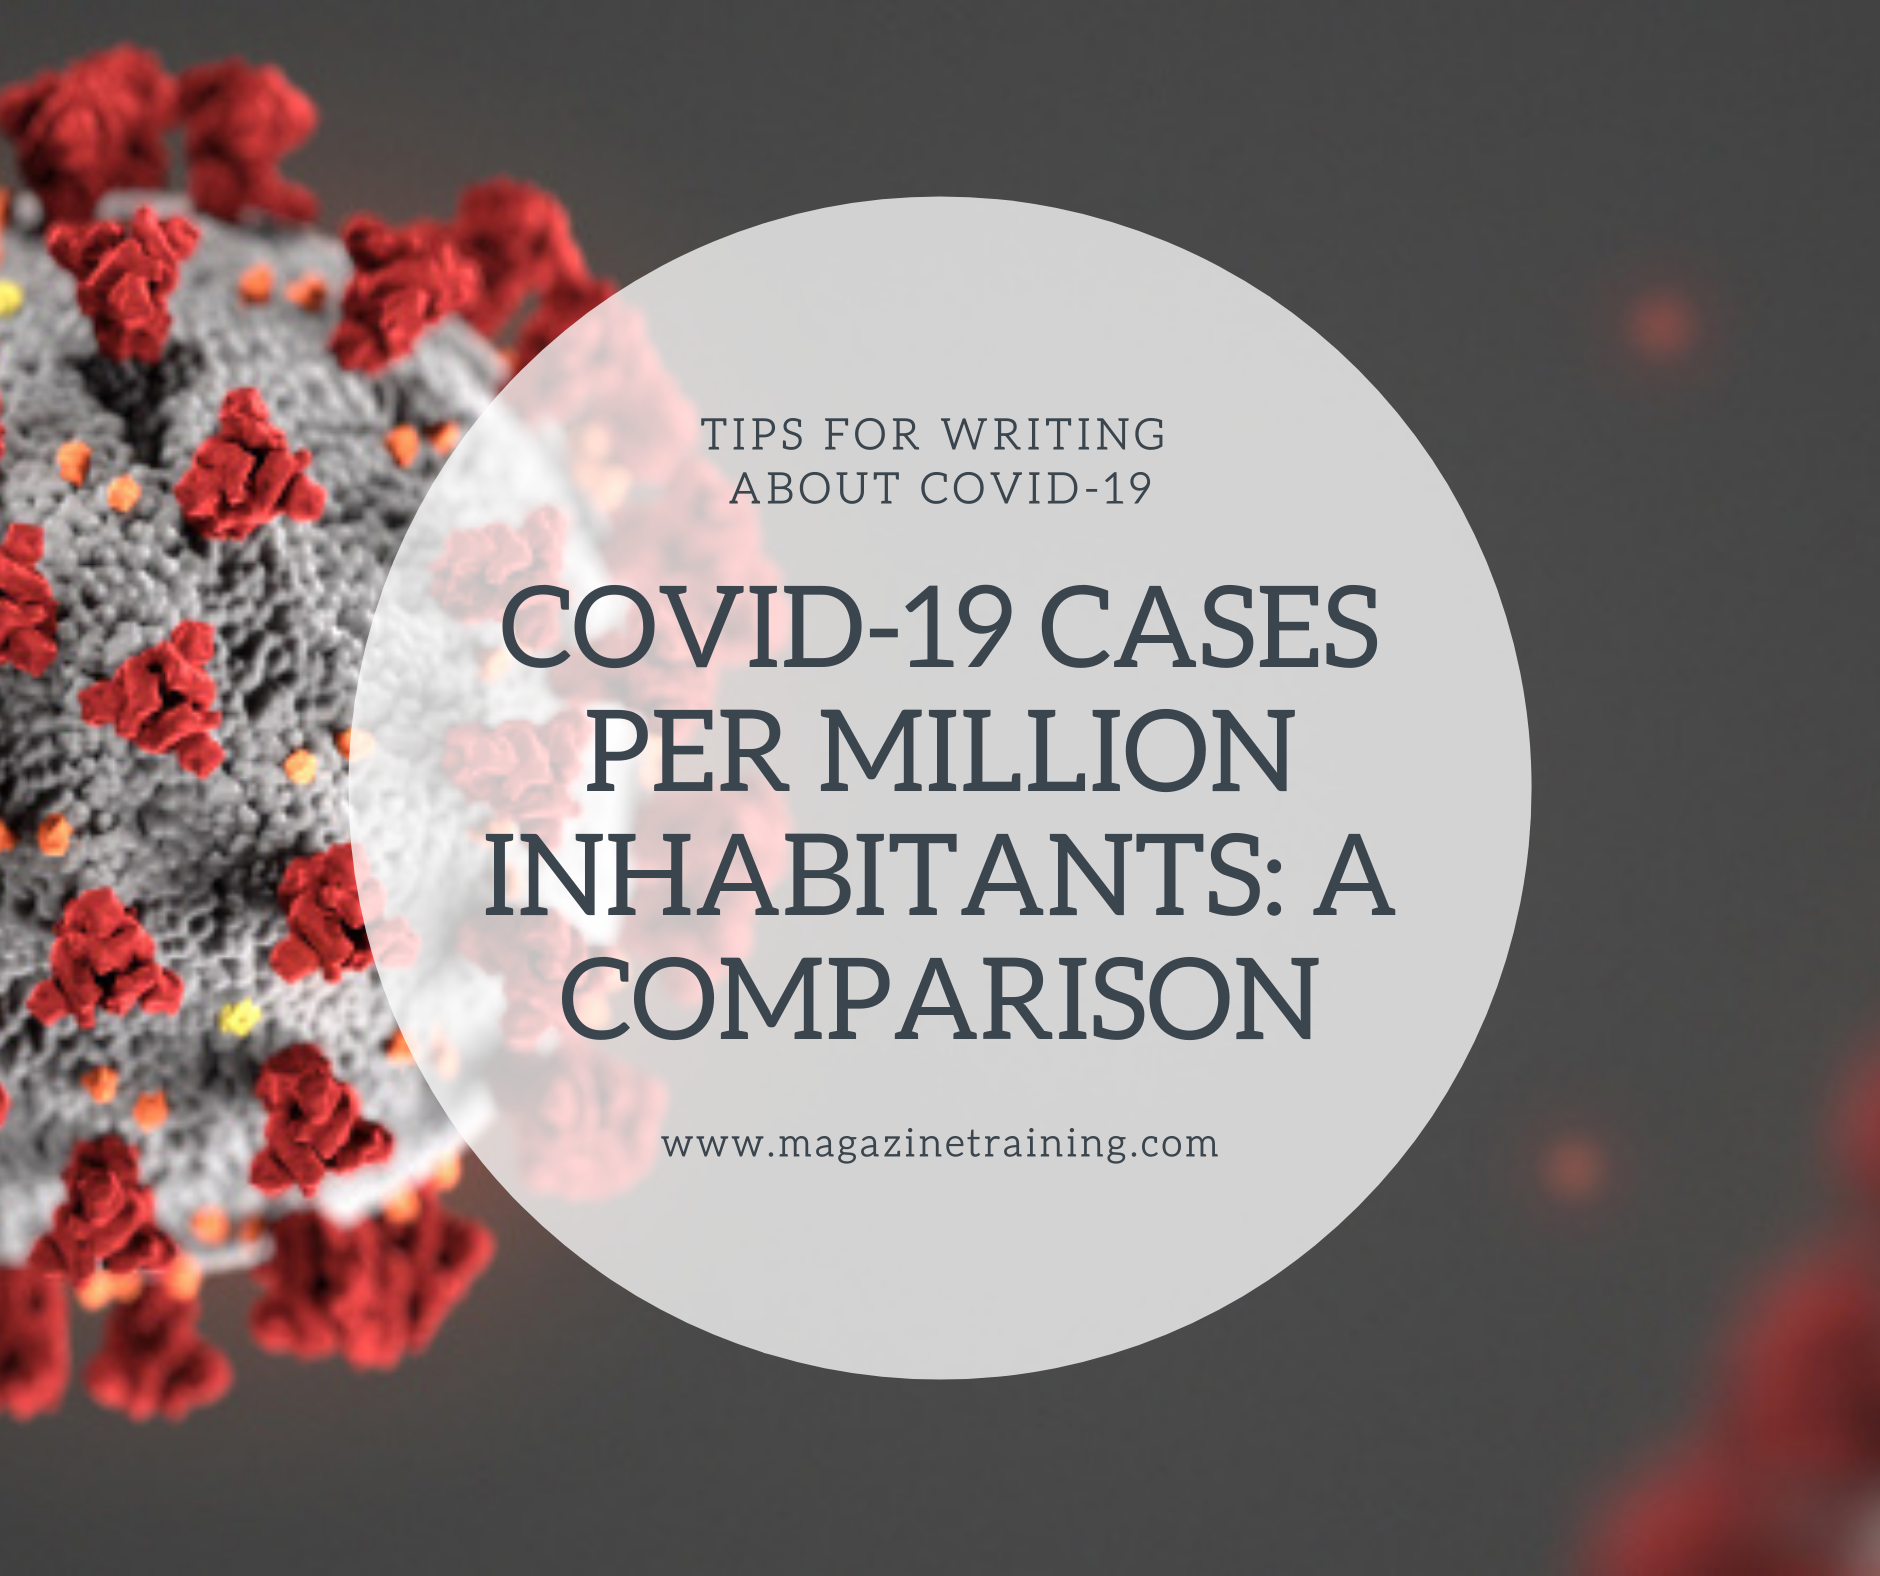 COVID-19 cases per million